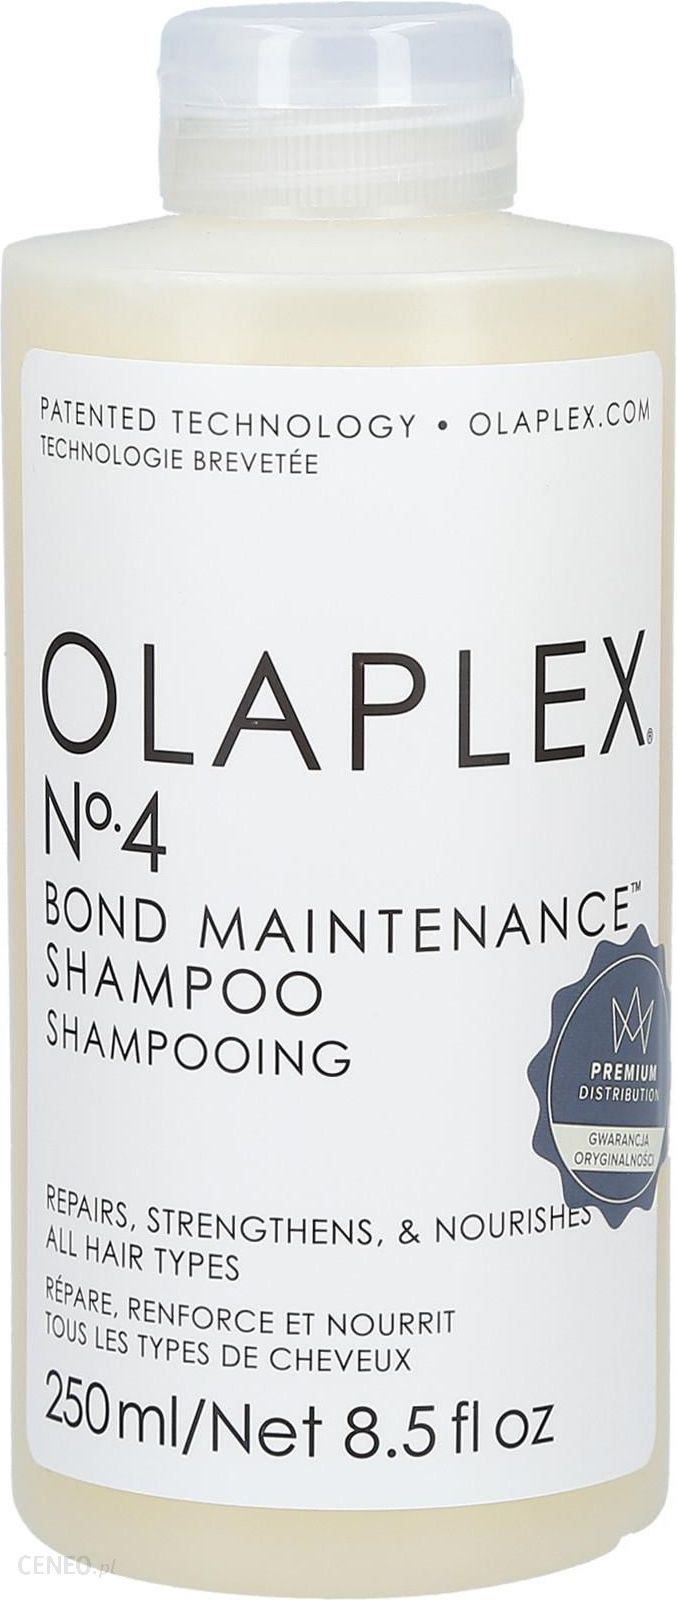 olaplex szampon do włosów